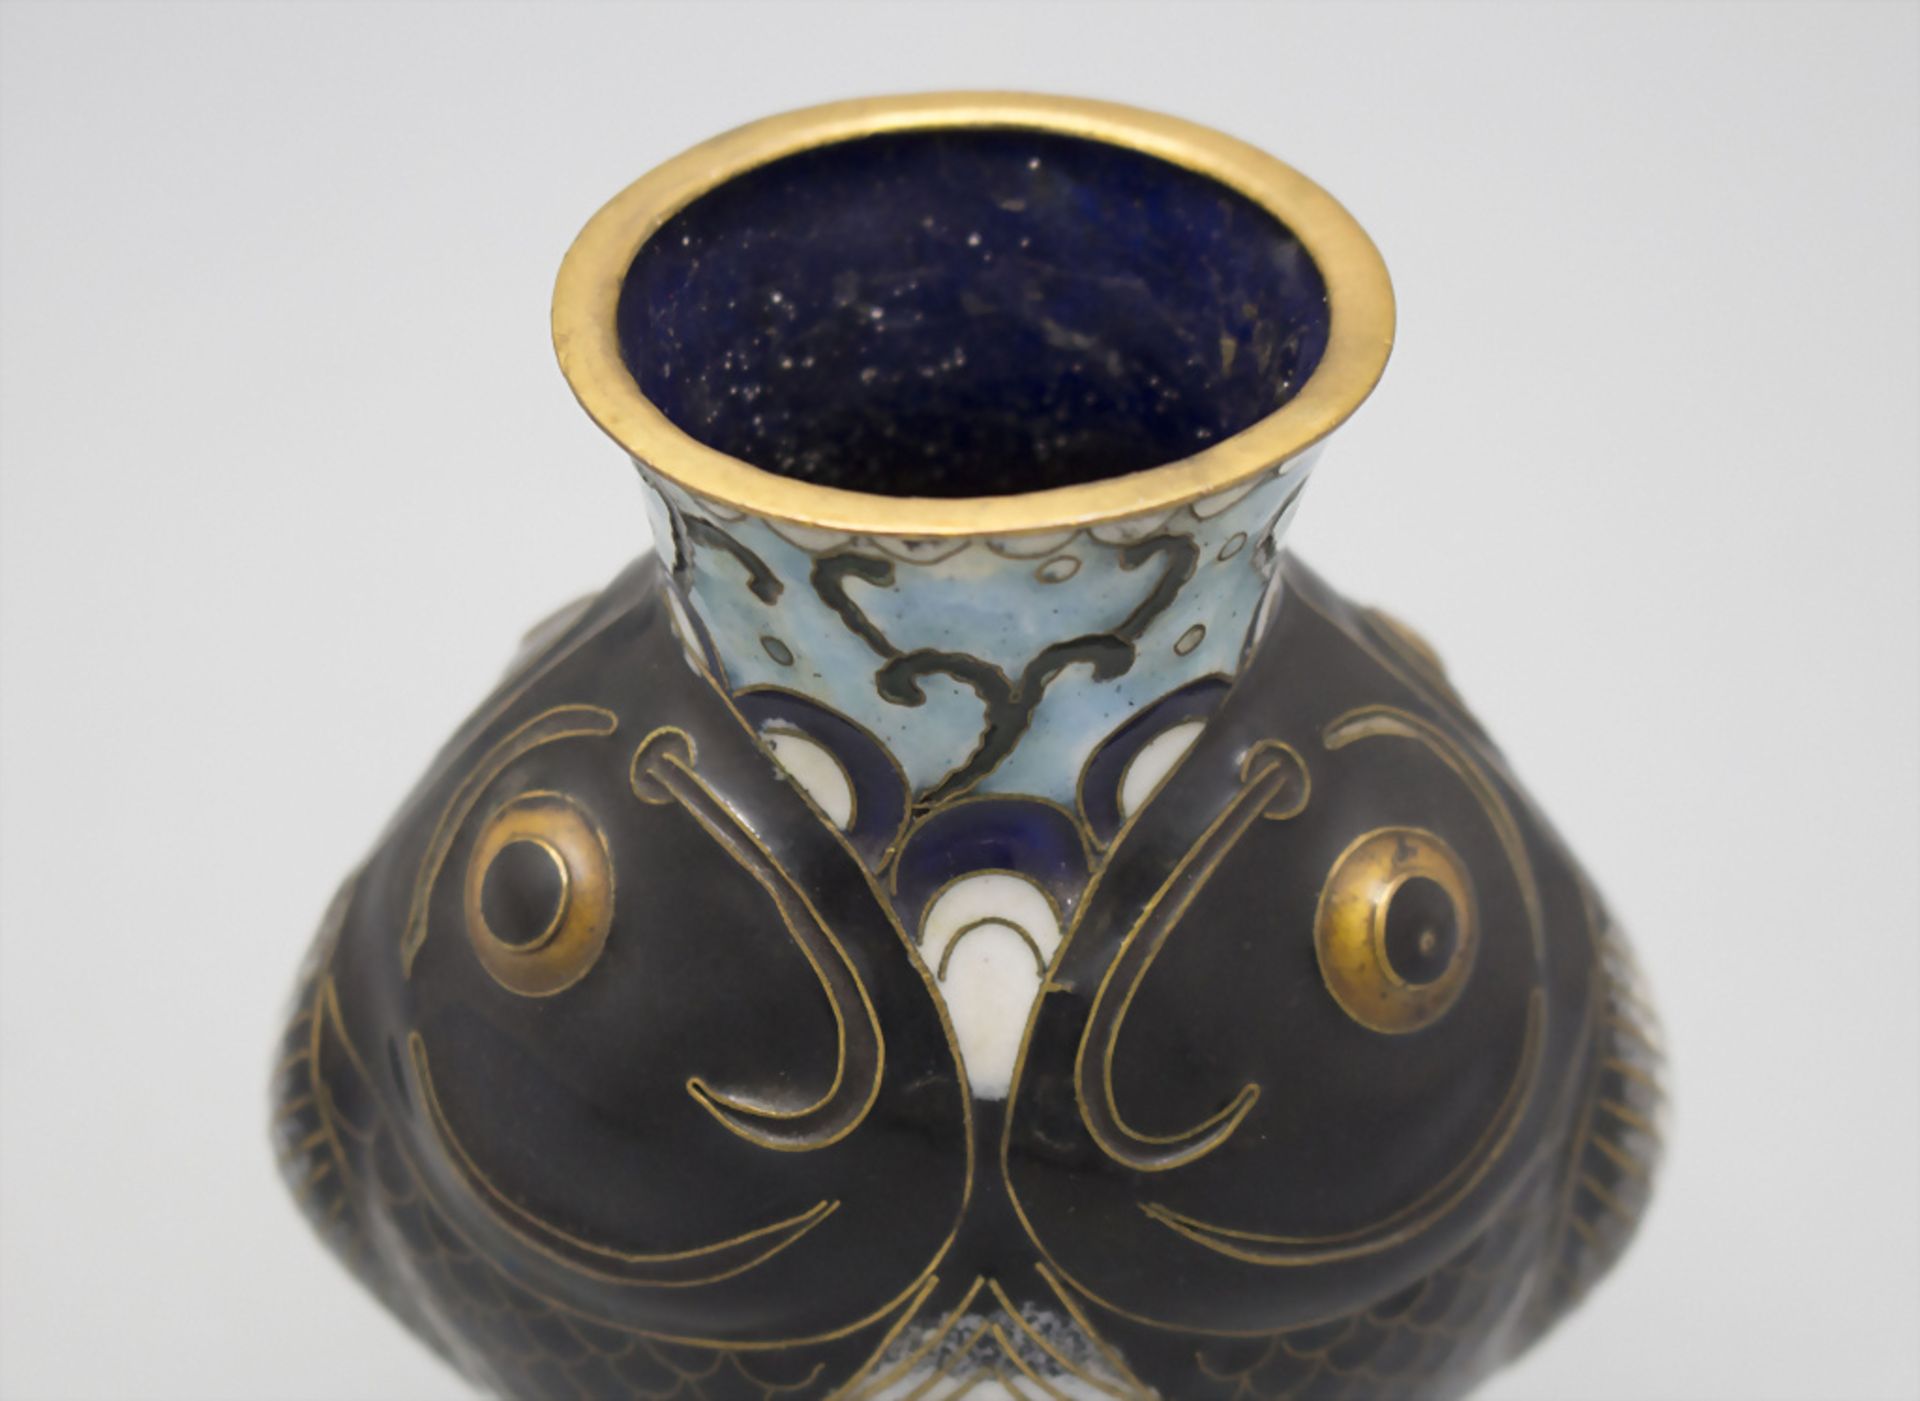 Seltene Cloisonné-Vase / A rare Cloisonné vase, China, späte Qing Dynastie (1644-1911) - Image 5 of 5